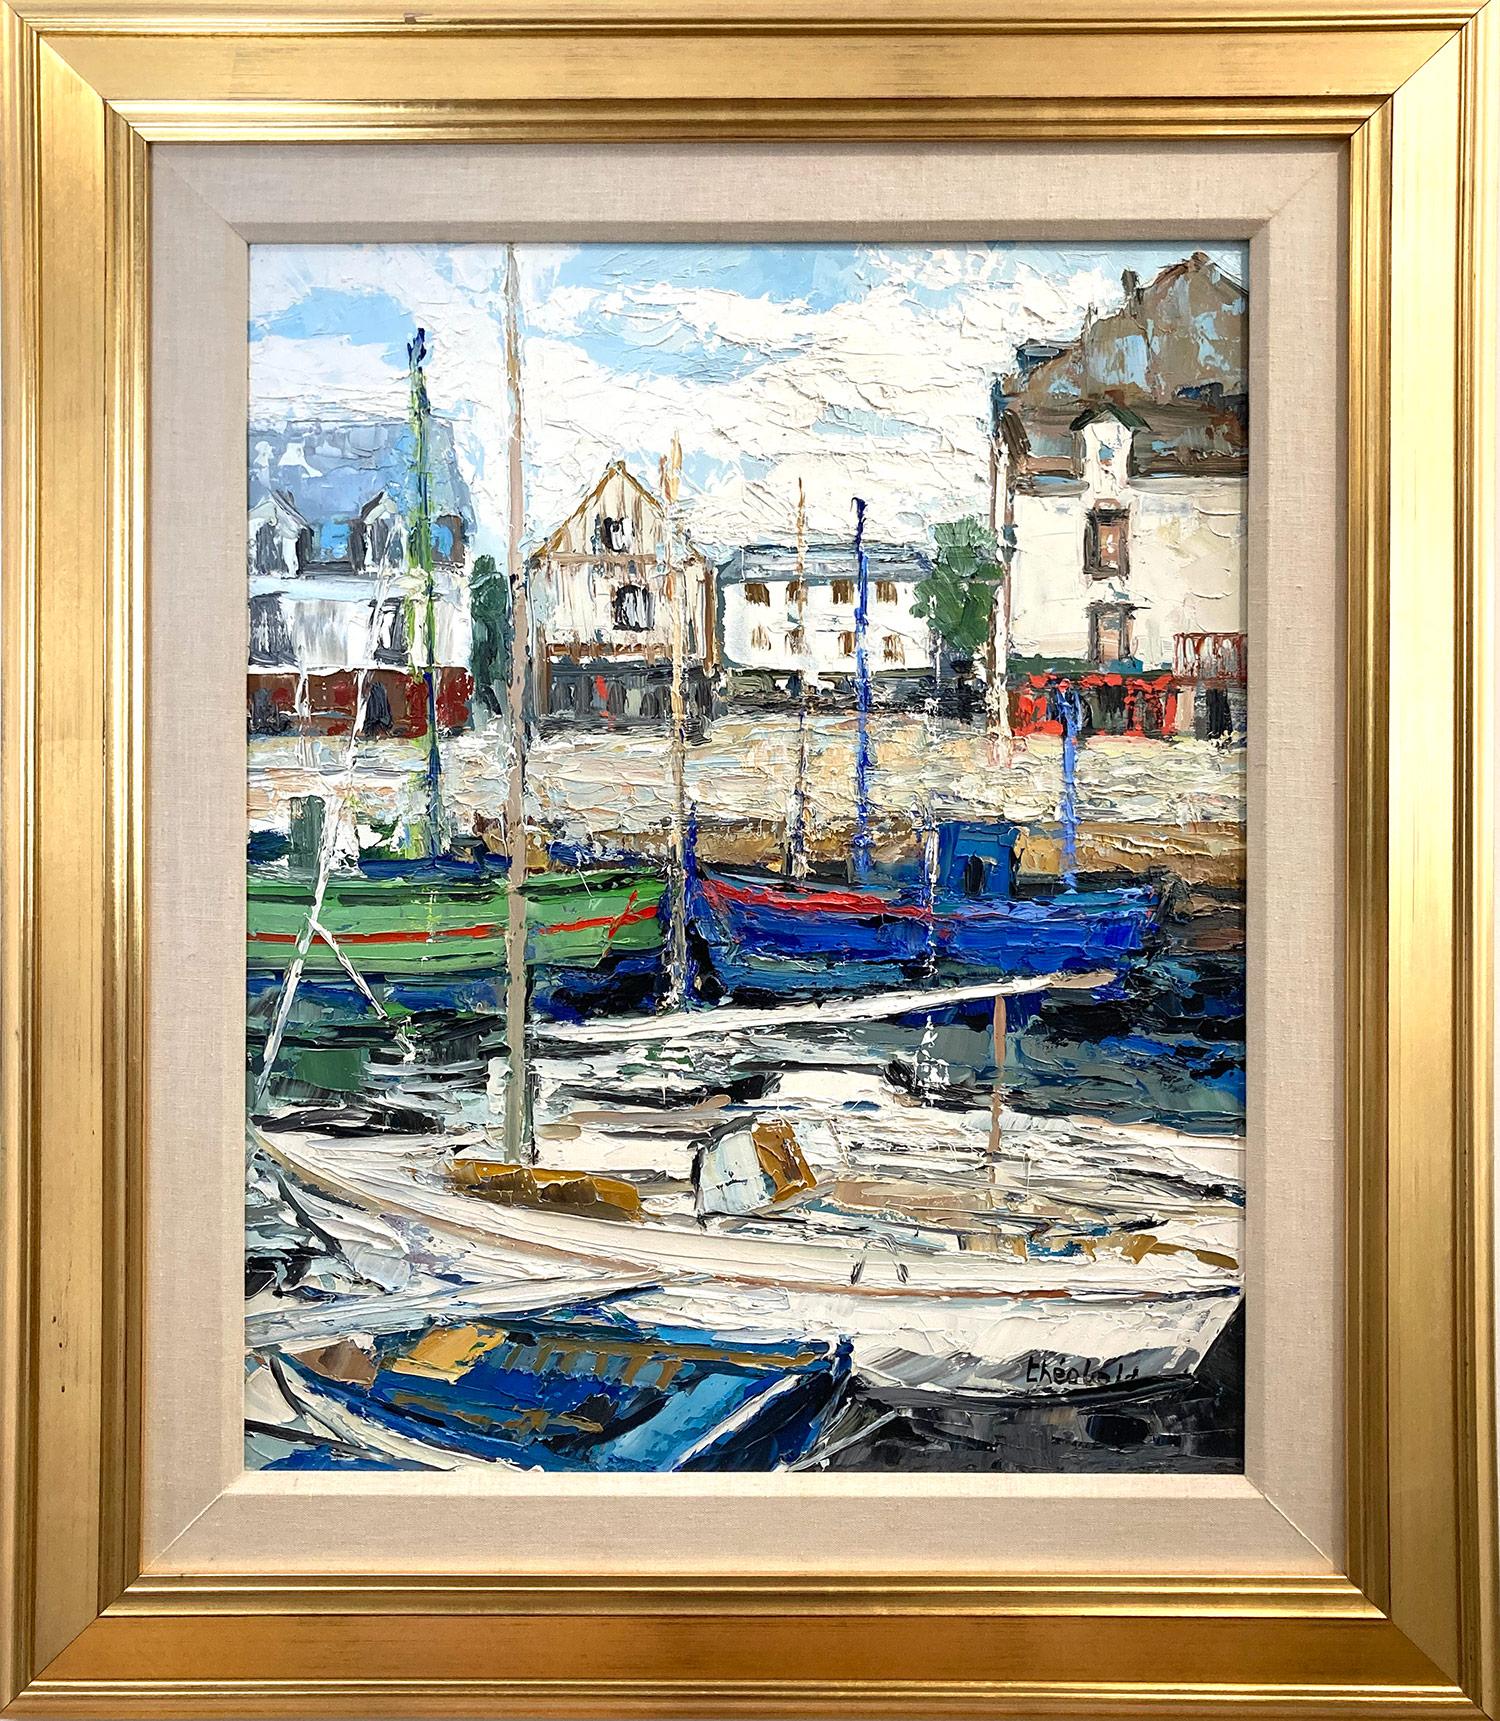 Renee Theobald Landscape Painting - "Au Croisic" Parisian Marine Harbor Scene Impressionist Oil Painting on Canvas